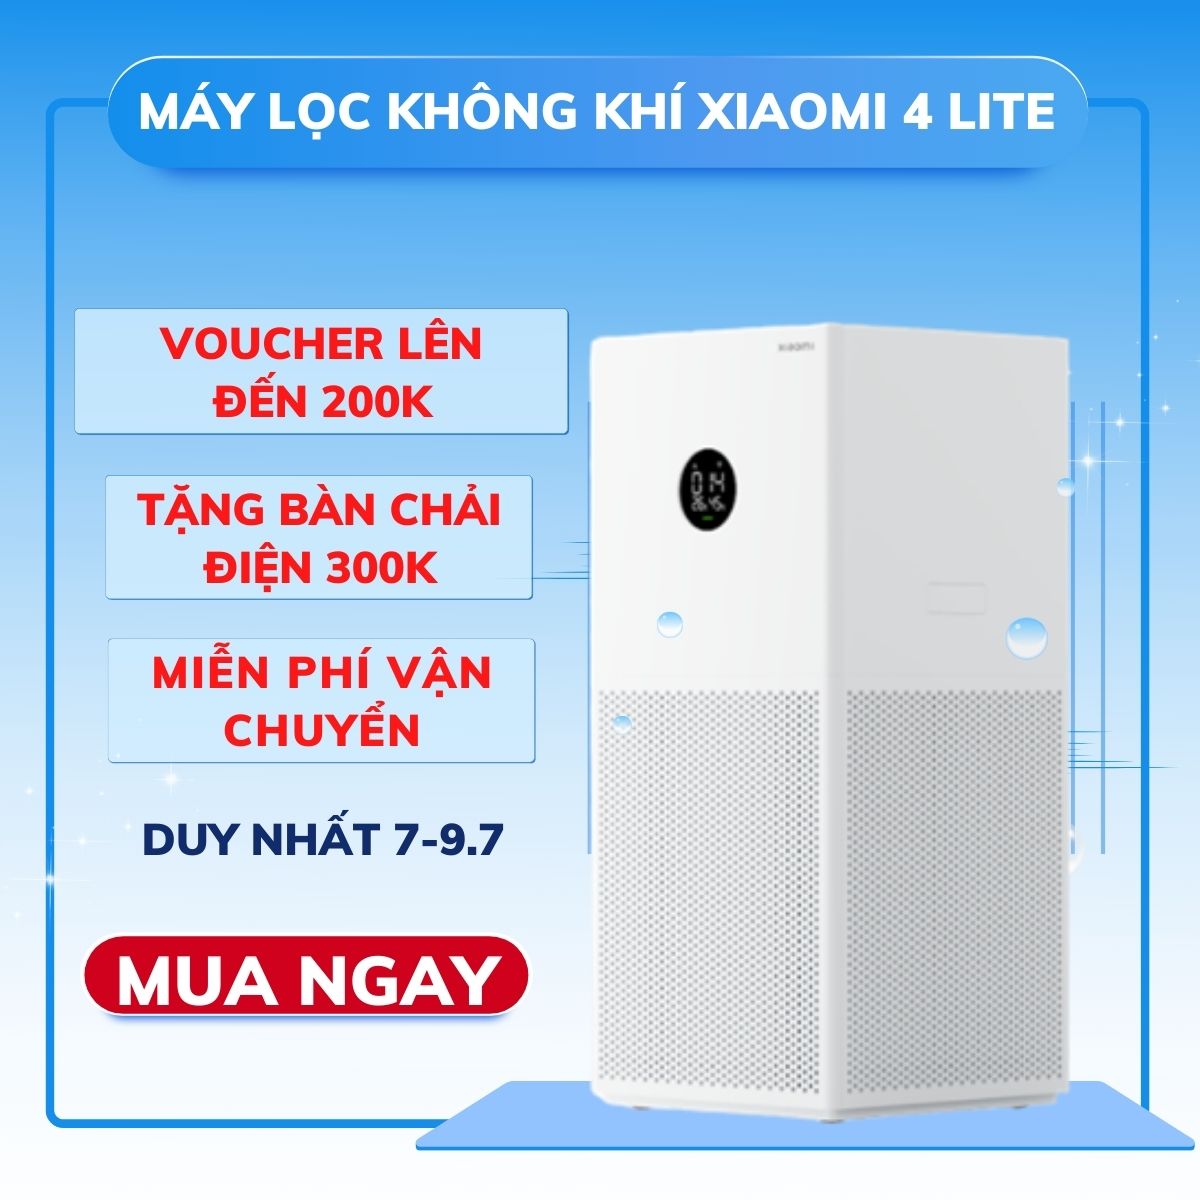 Tặng MGG 100k Máy Lọc Không Khí Xiaomi 4 LITE 3C Air purifier May loc